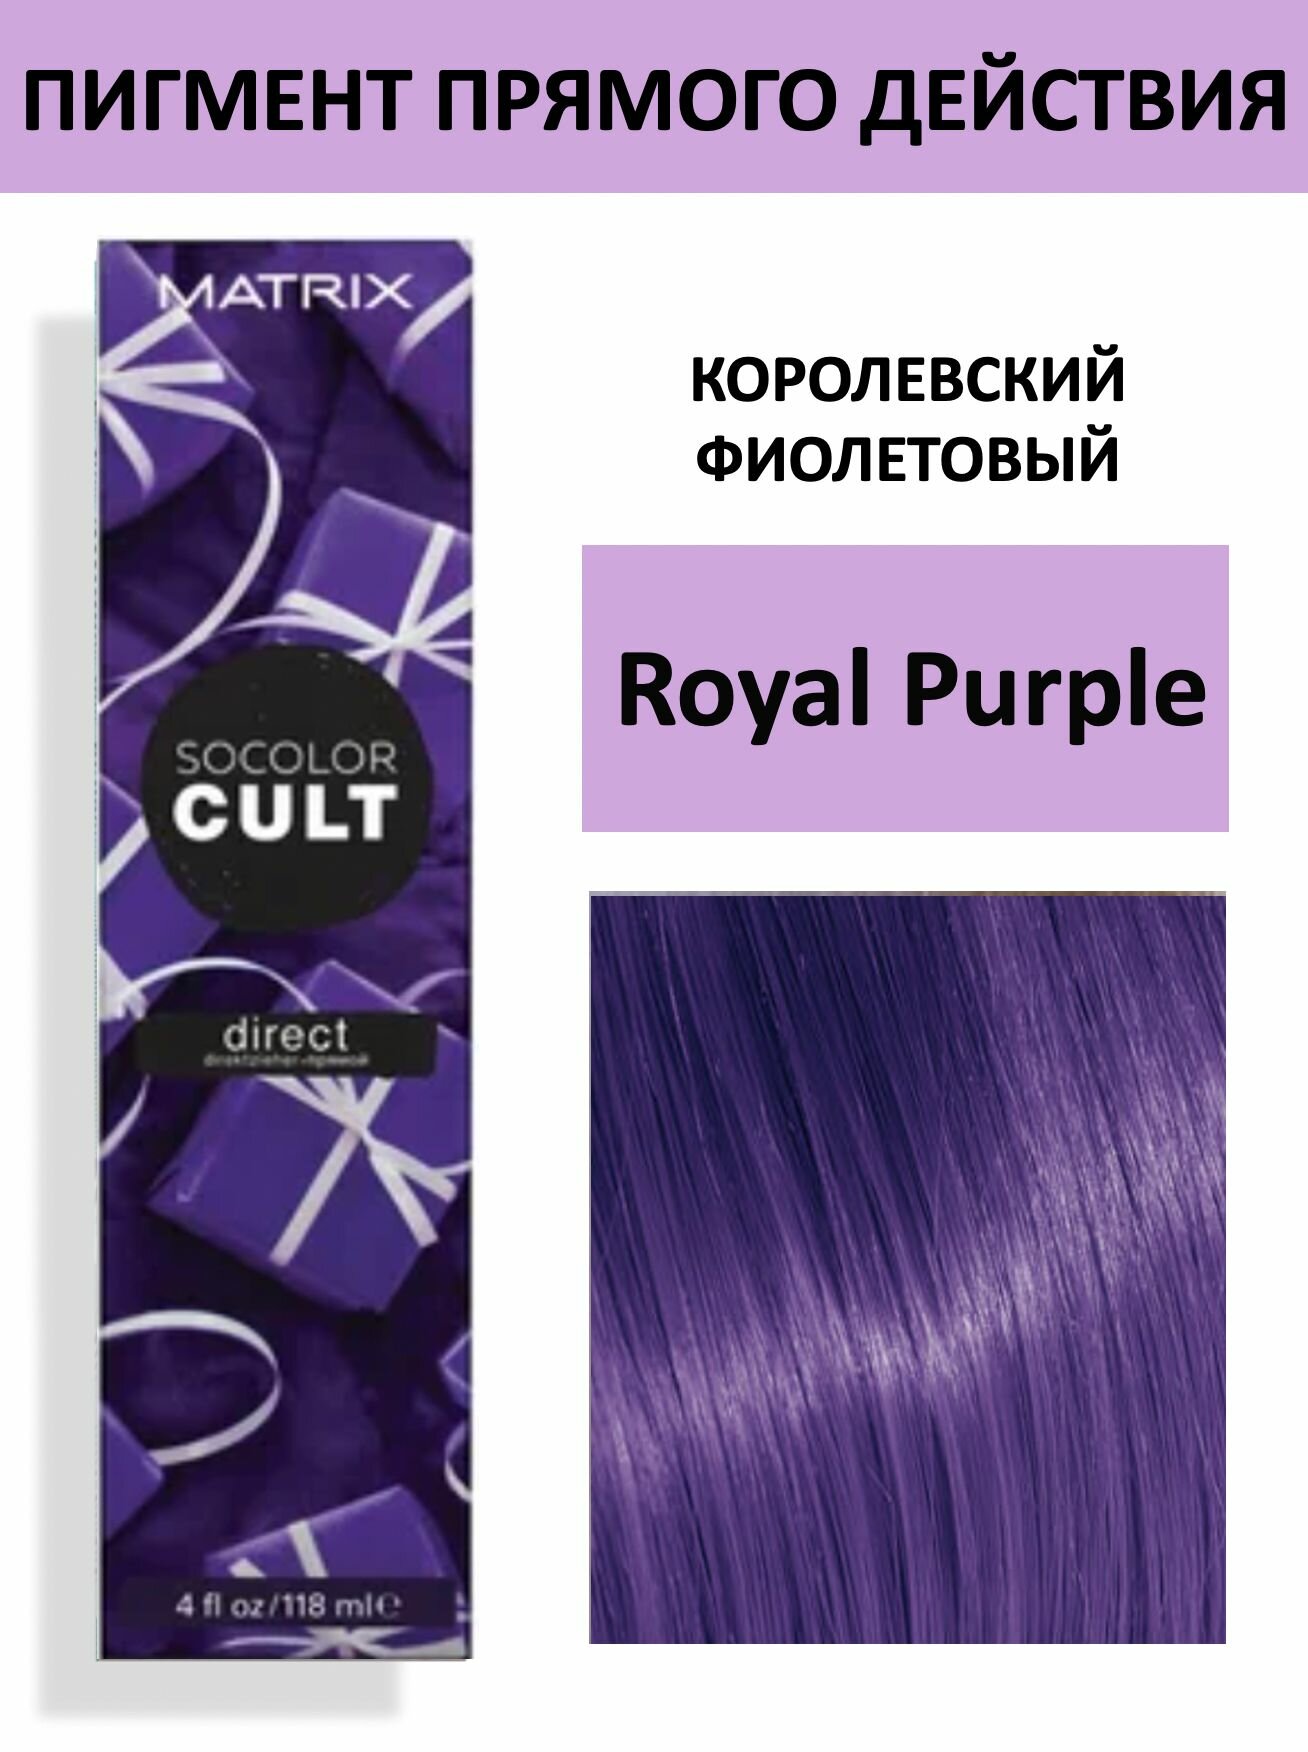 Matrix Socolor Cult - Краситель прямого действия Королевский фиолетовый 118 мл - фото №18